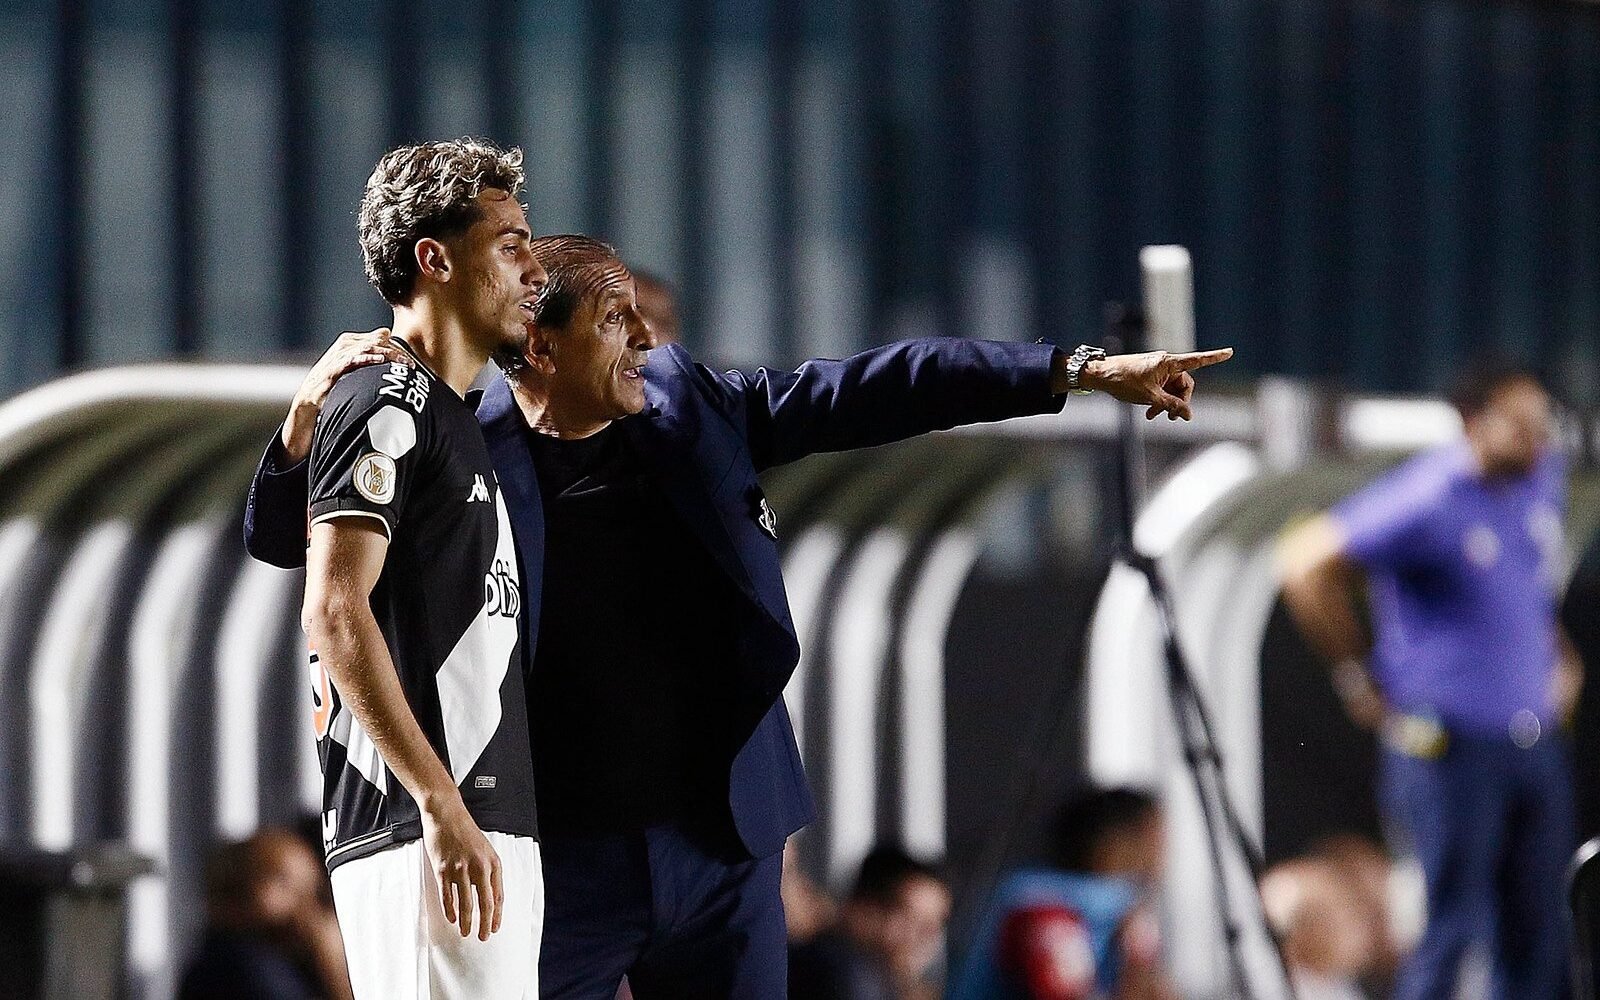 CEO do Vasco SAF, Luiz Mello celebra faturamento do clube com bilheteria na  Série B do Campeonato Brasileiro - Lance!